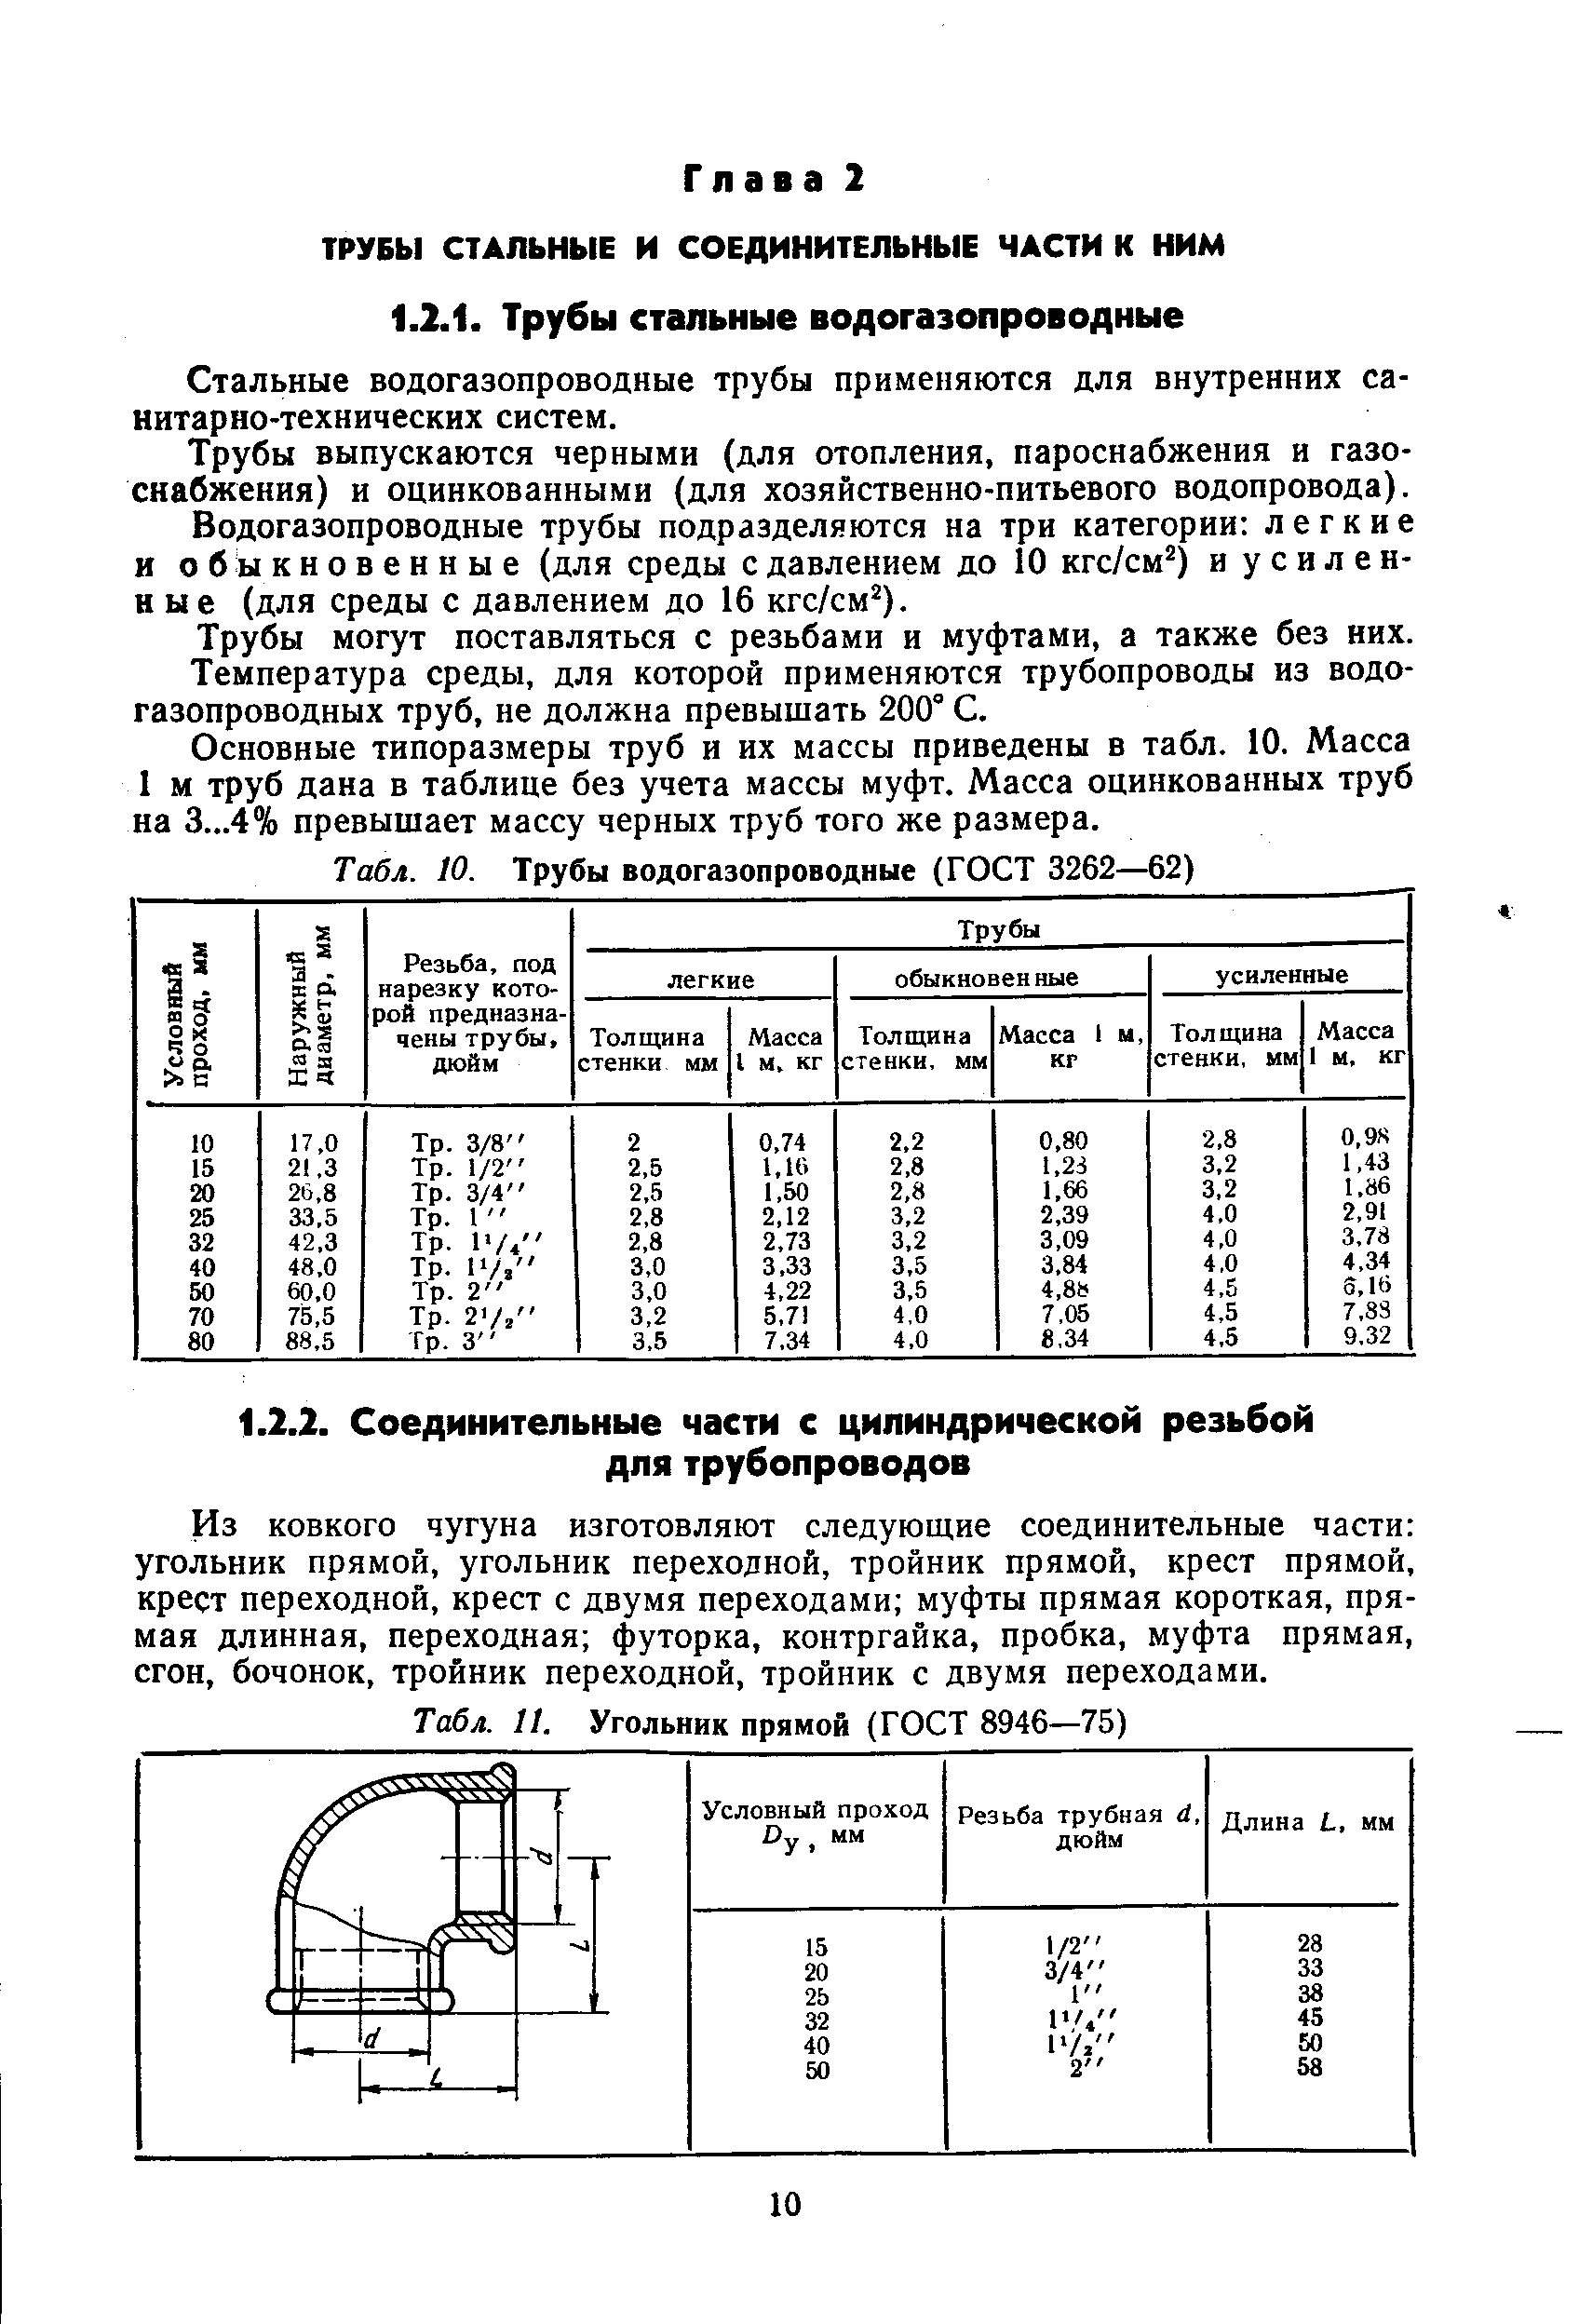 Табл. 10. Трубы водогазопроводные (ГОСТ 3262—62)
